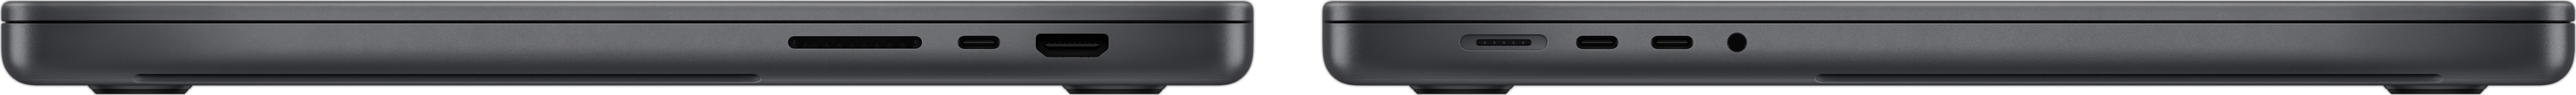 MacBook Pro sivulta, näkyvissä SDXC-korttipaikka, kolme Thunderbolt 4 ‑porttia, HDMI-portti, MagSafe 3 ‑latausportti ja kuulokeliitäntä.